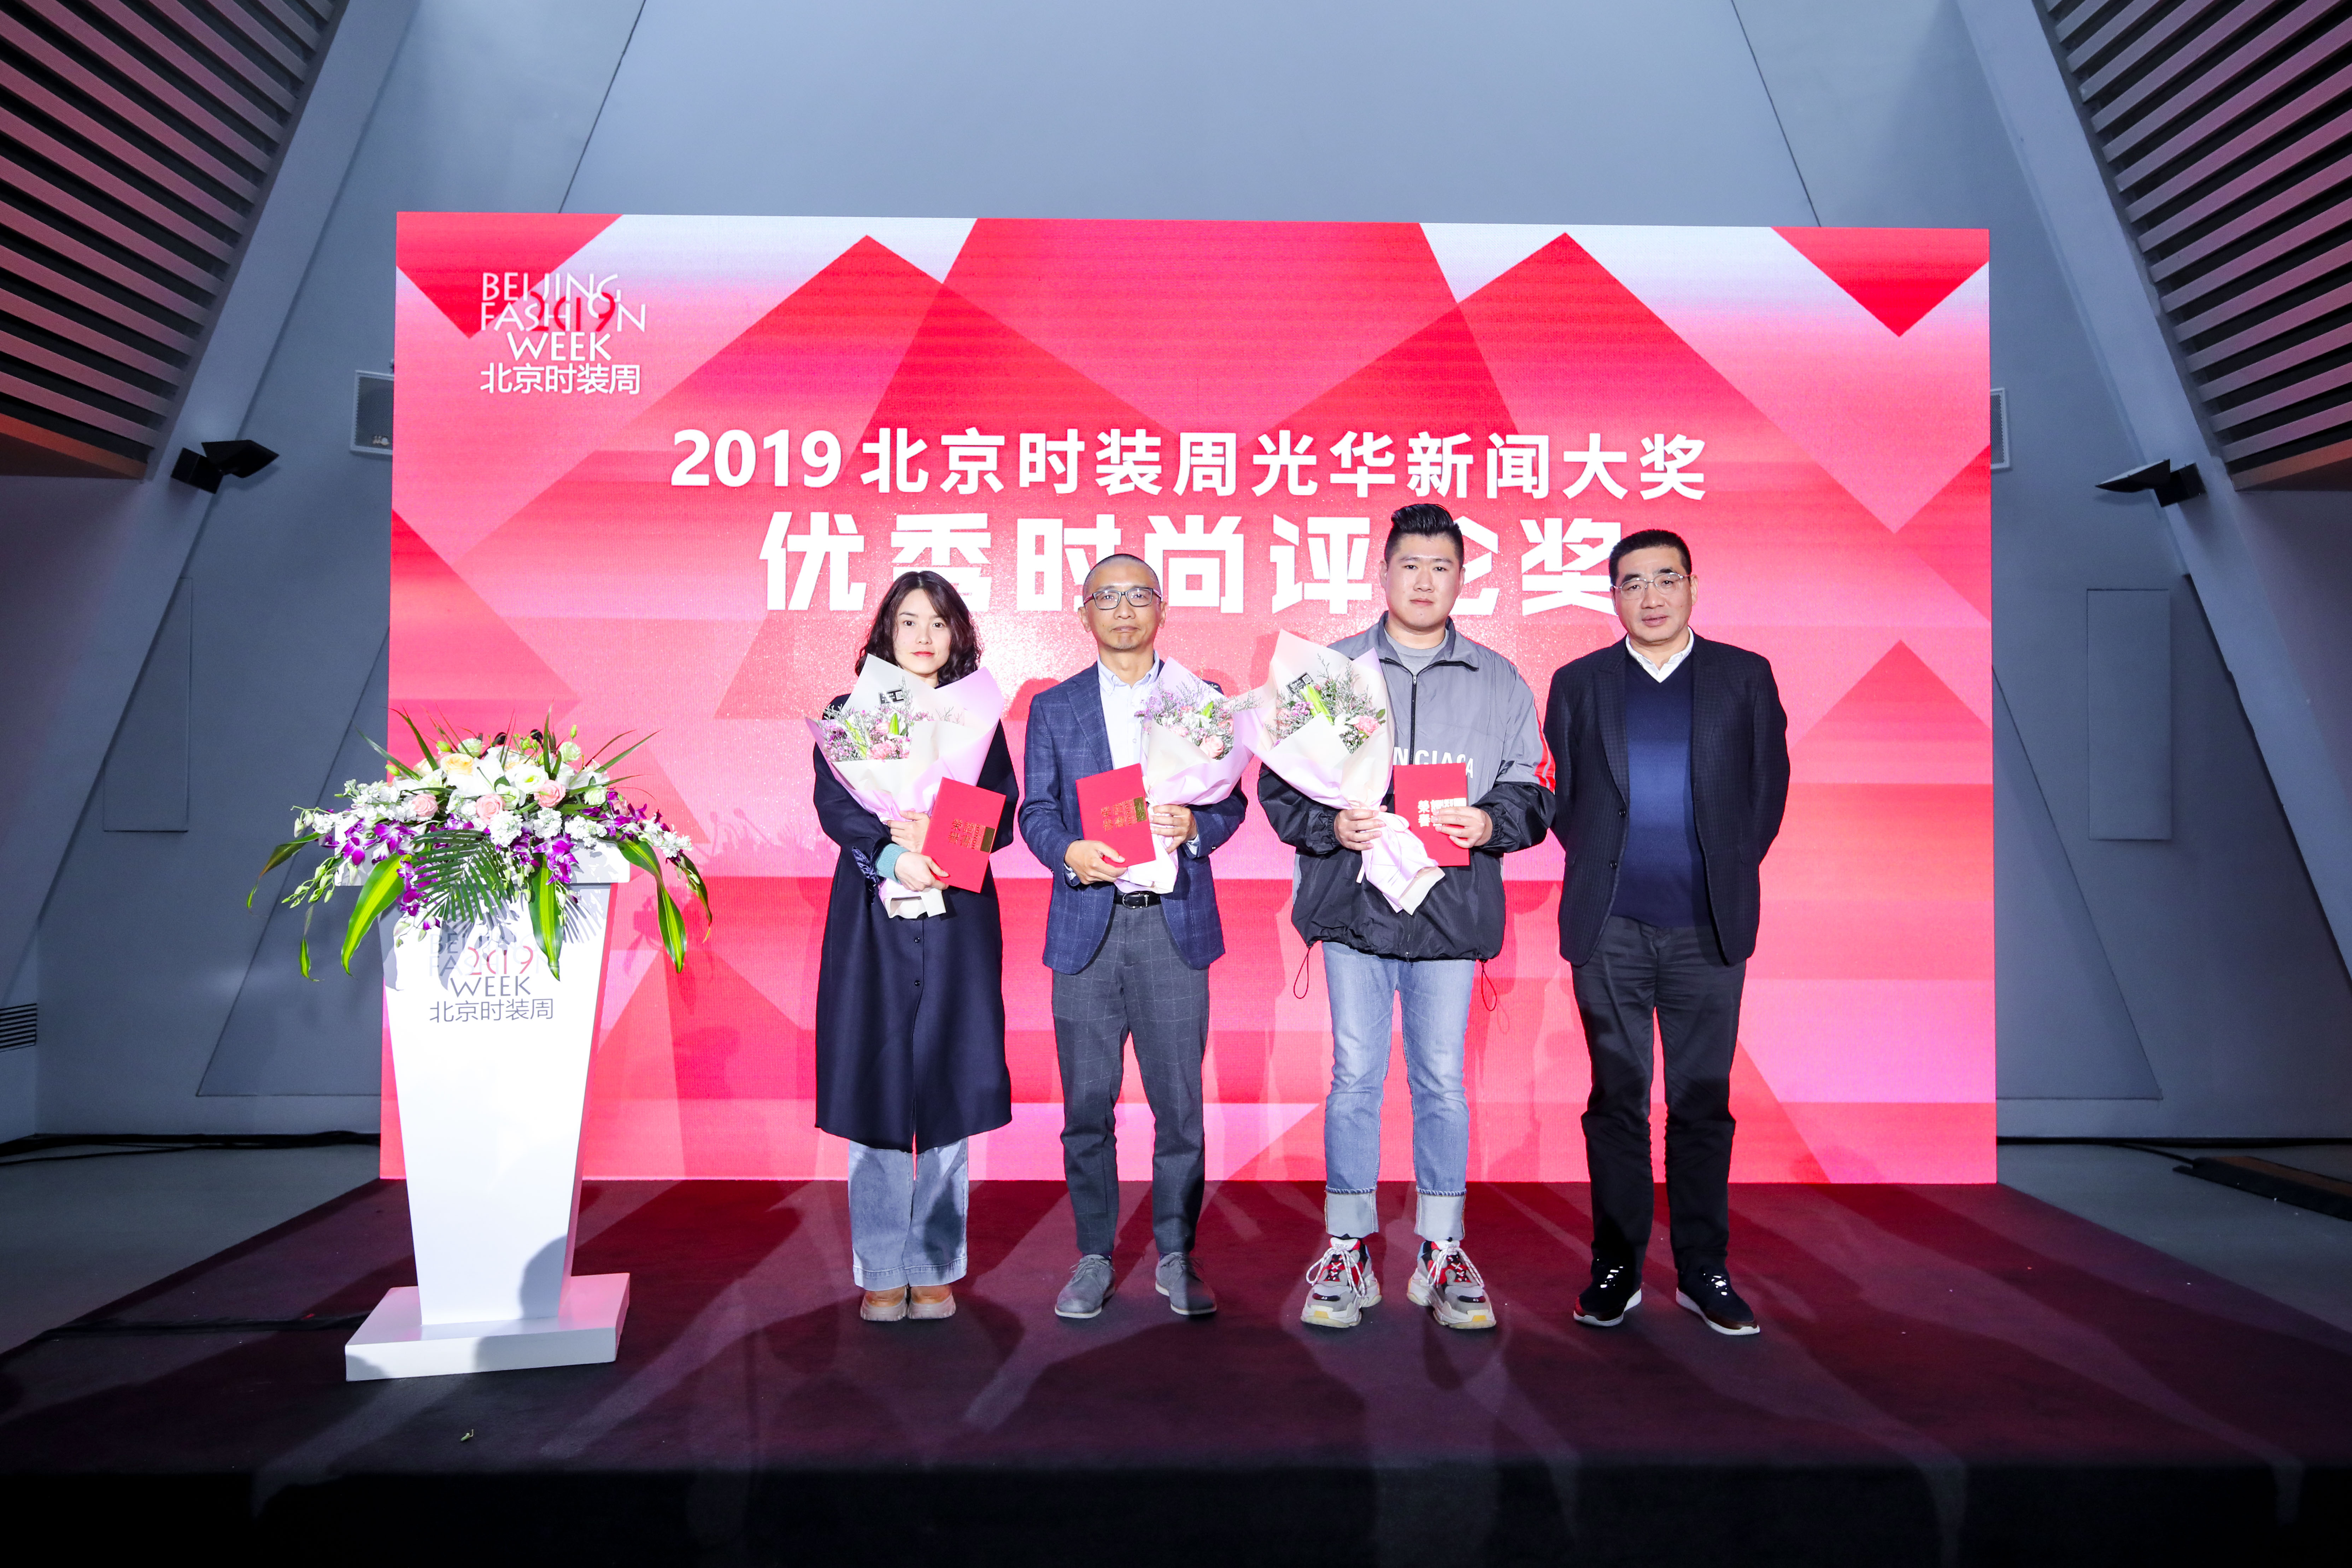 奖"获得者颁奖据悉,2019北京时装周组委会根据本届官方注册媒体记者报